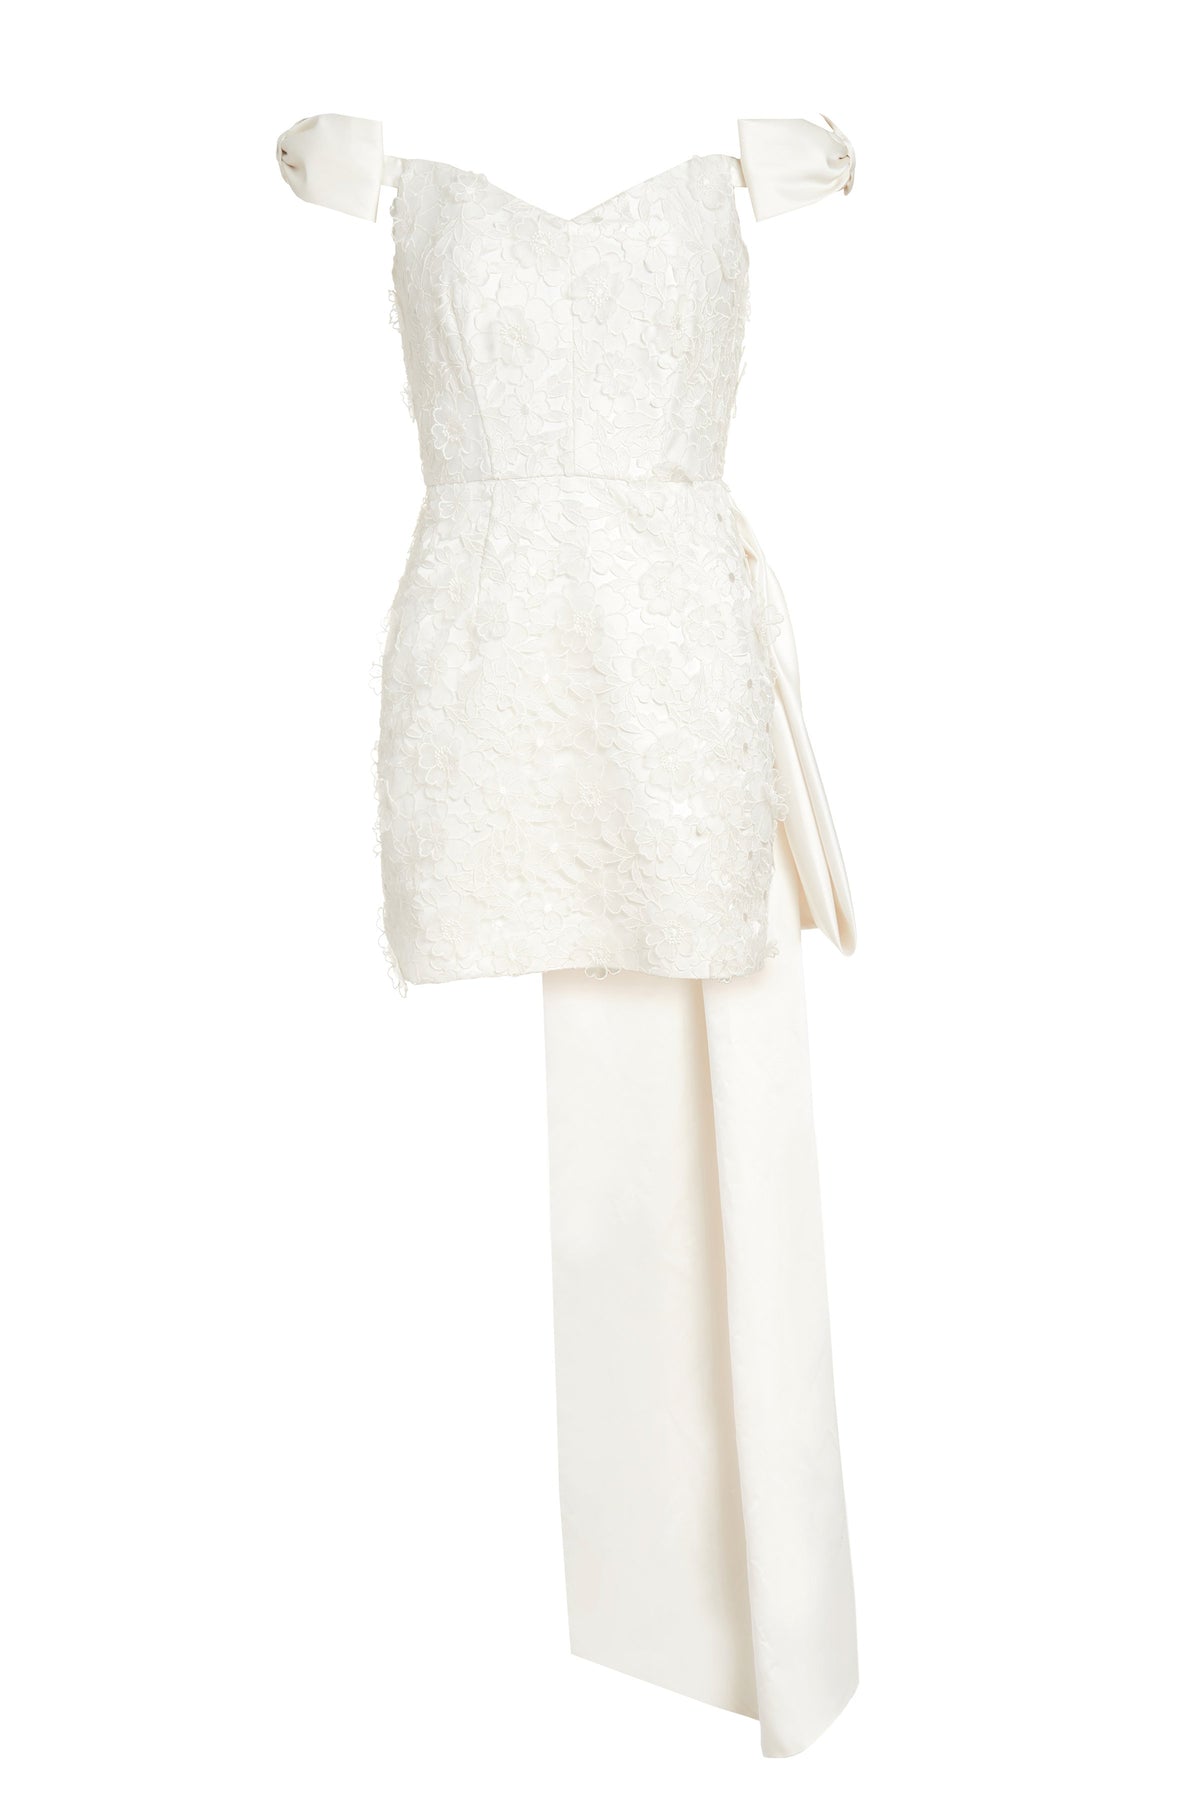 Bowen Bow Shoulder White Floral Applique Mini Dress